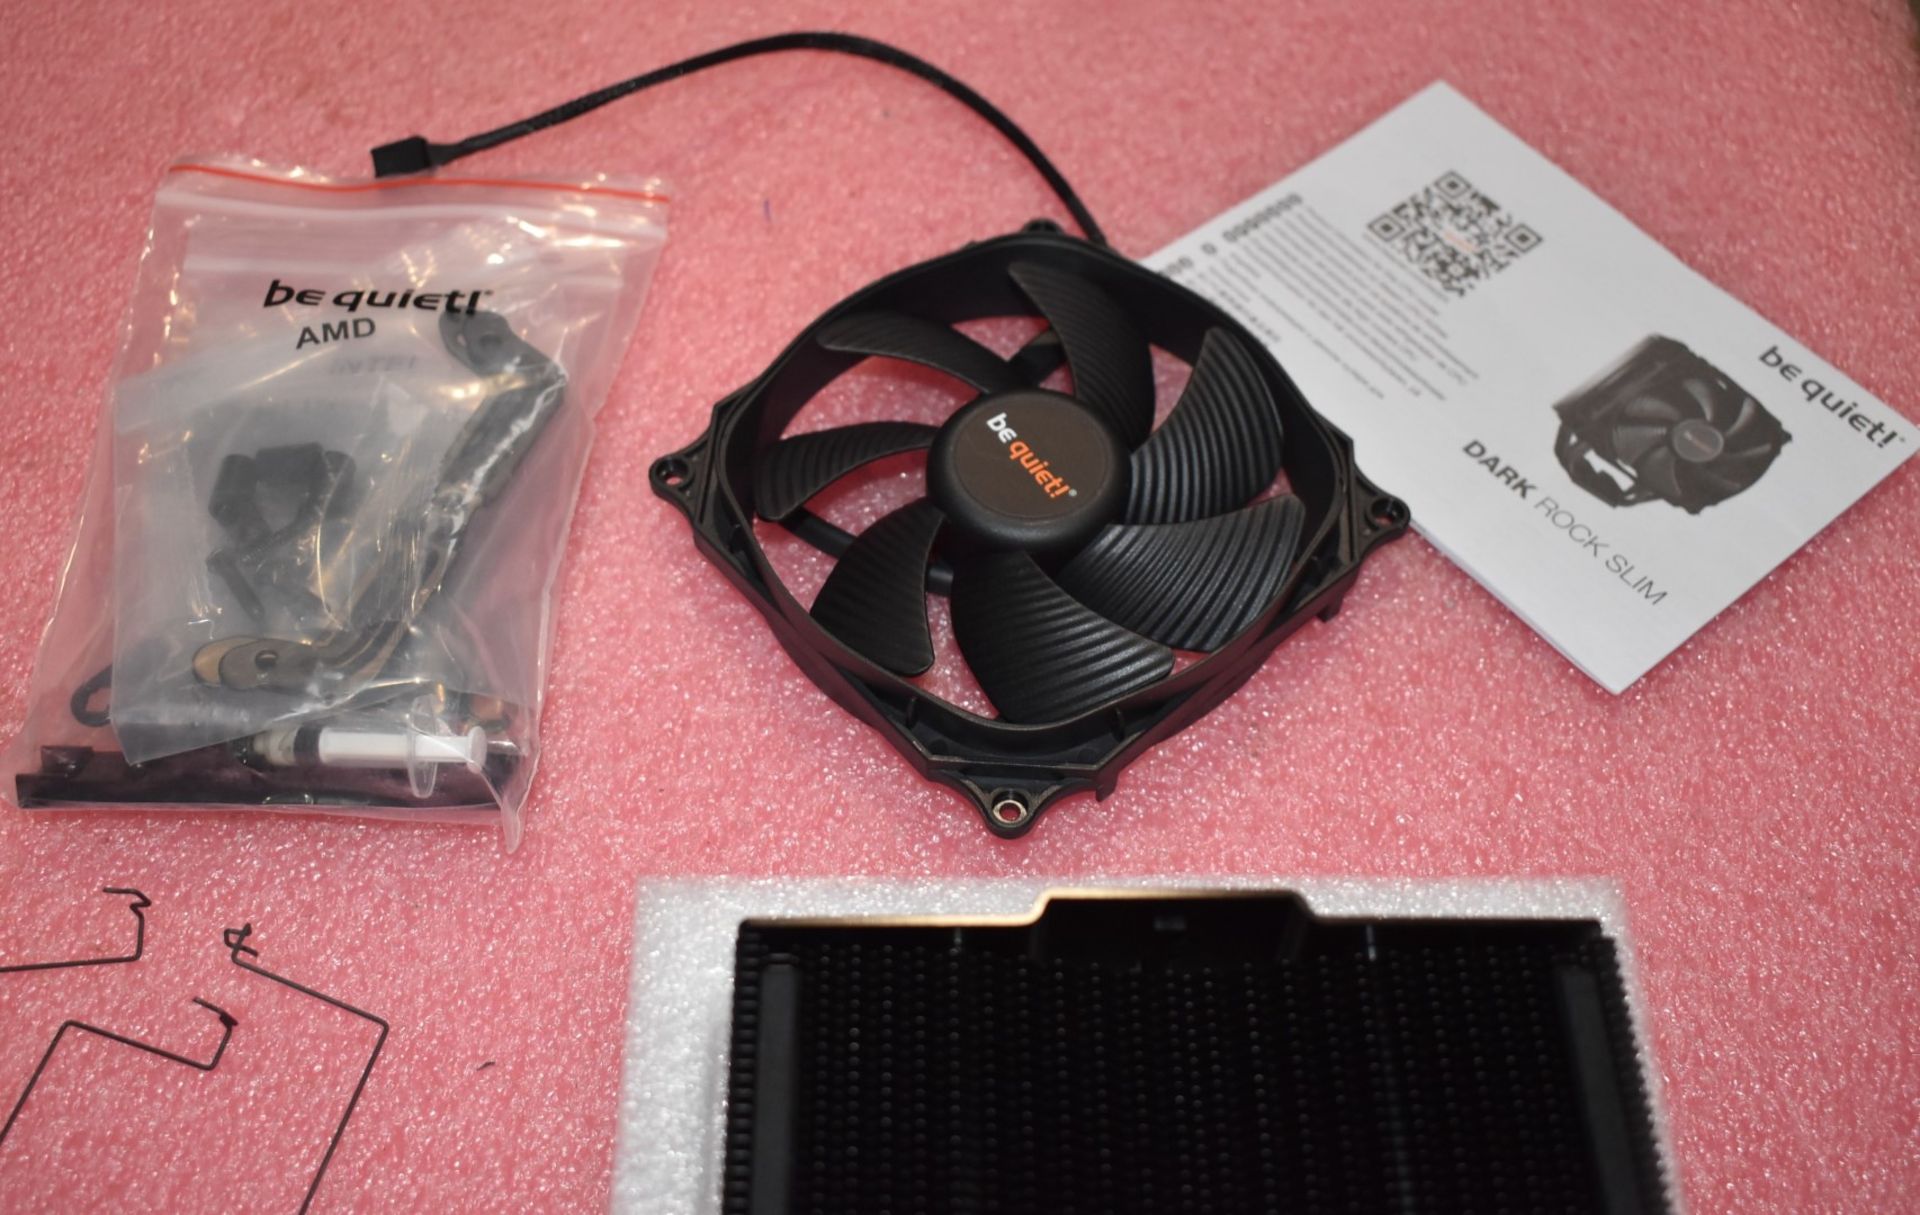 1 x BeQuiet Dark Rock Slim CPU Cooler With 120mm Fan - Image 6 of 8